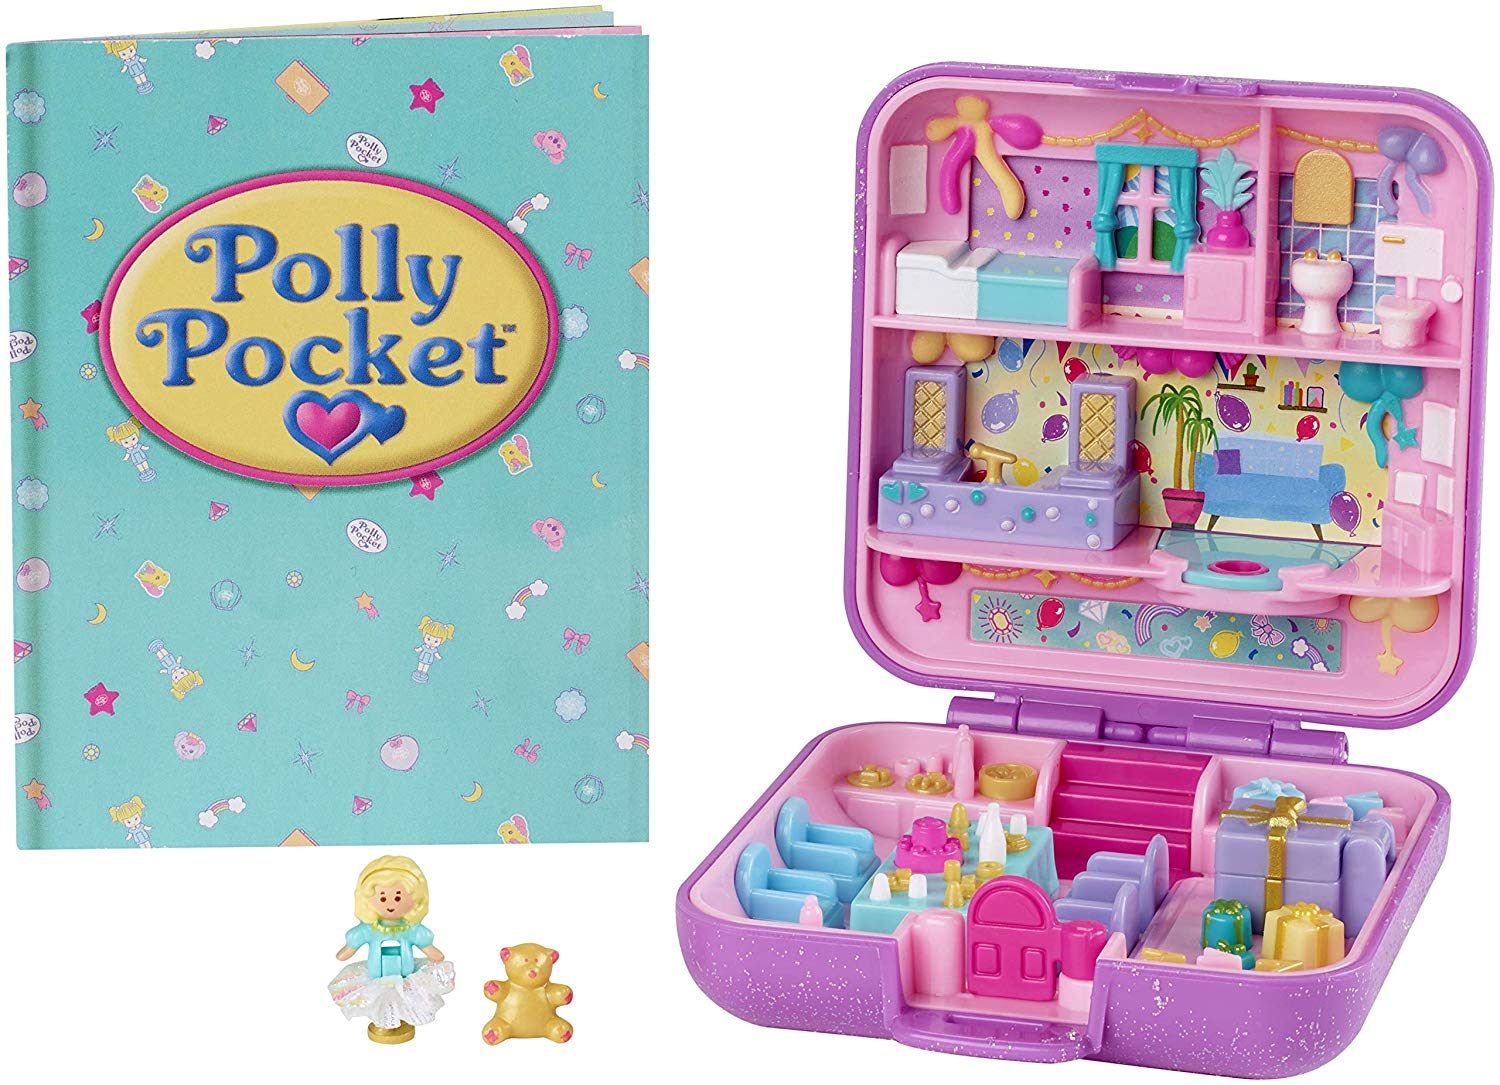 30 ideias de Polly pokett  polly pocket, pocket polly, aniversario